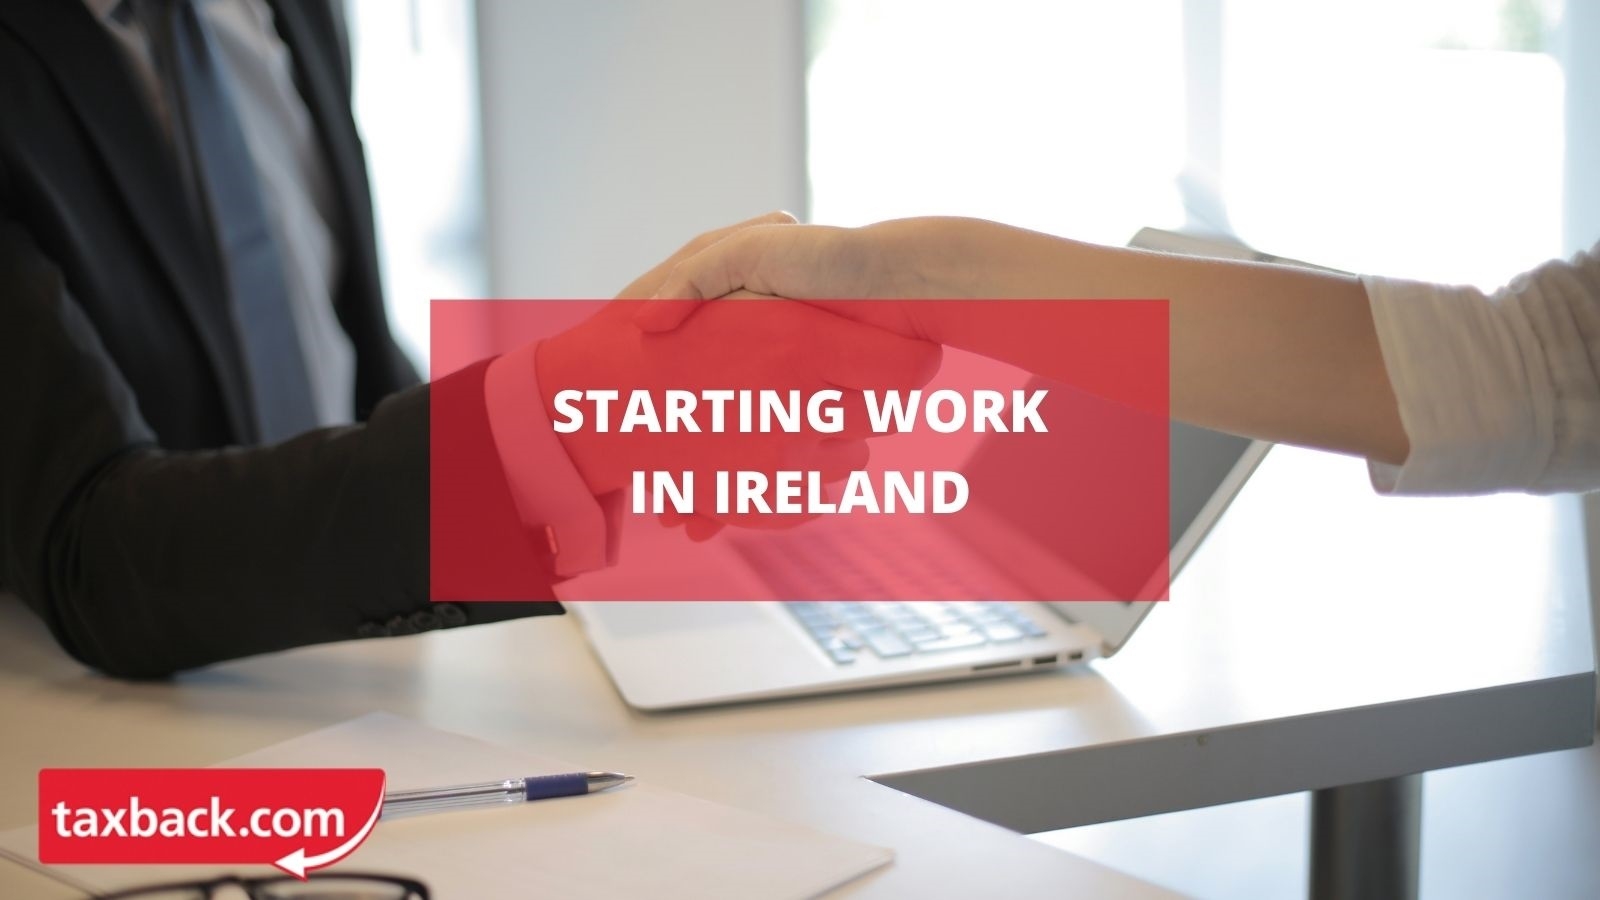 Starting work in Ireland